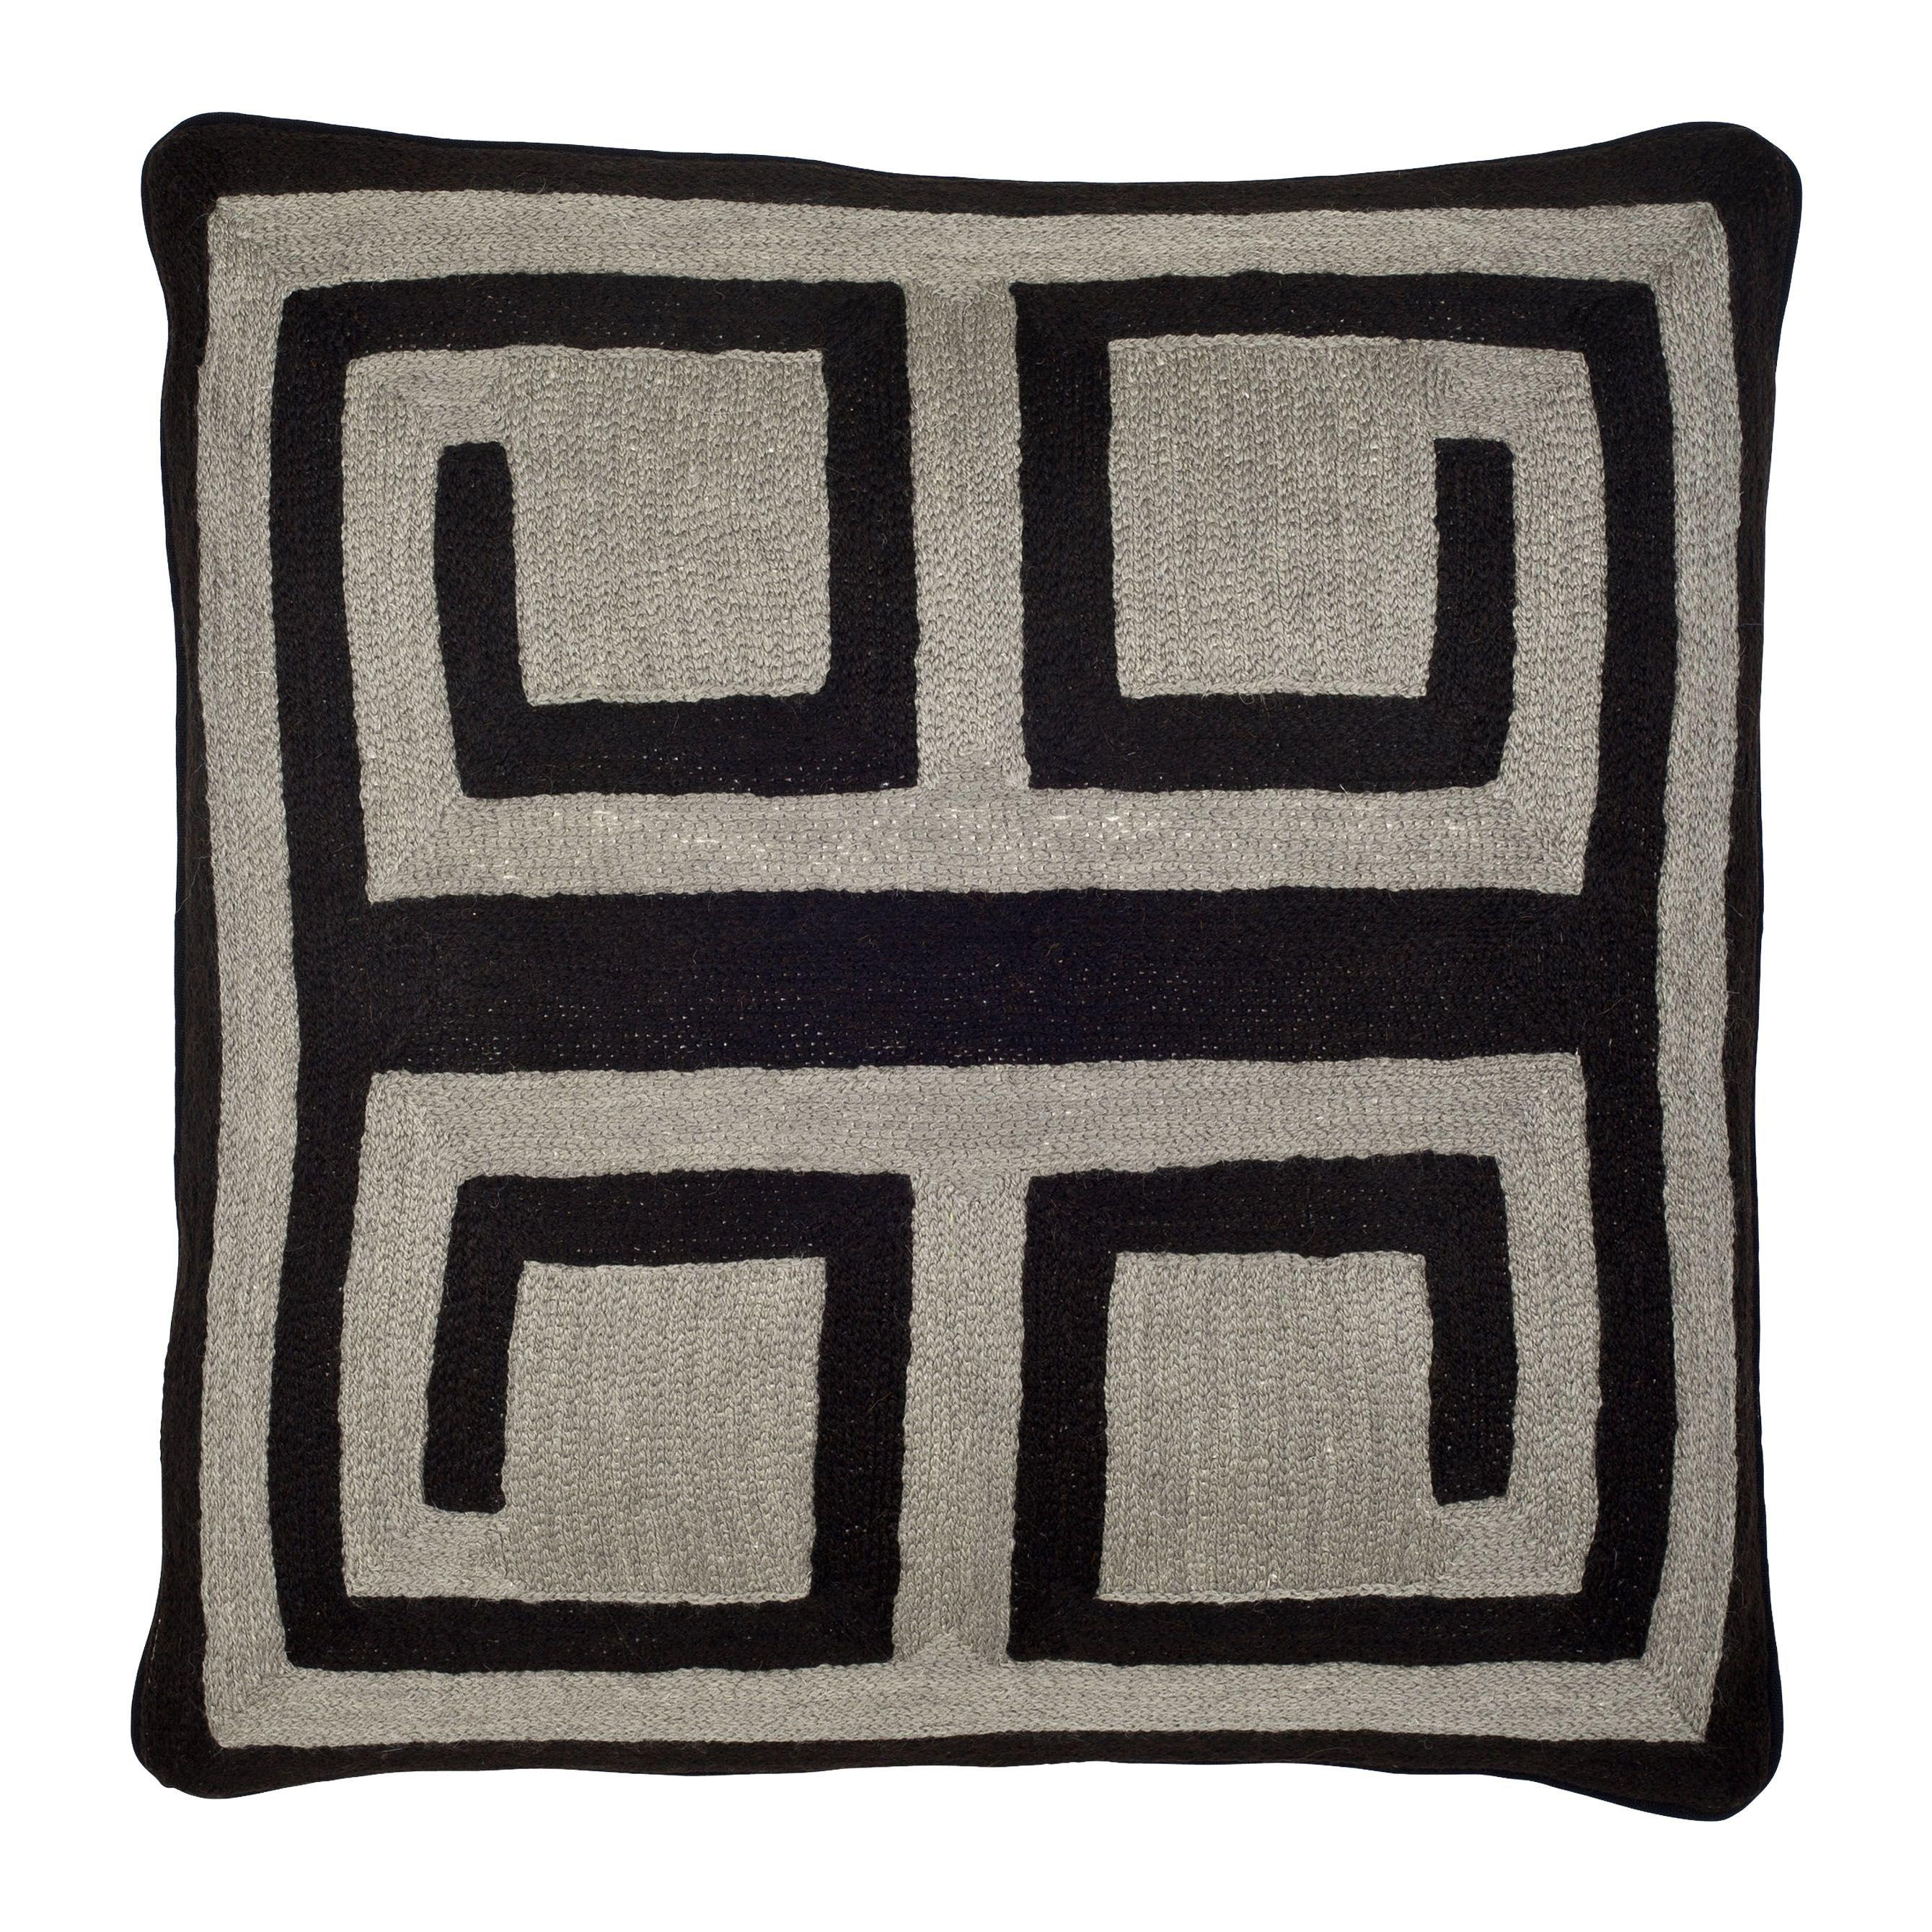 Купить Декоративная подушка Cushion Bliss в интернет-магазине roooms.ru